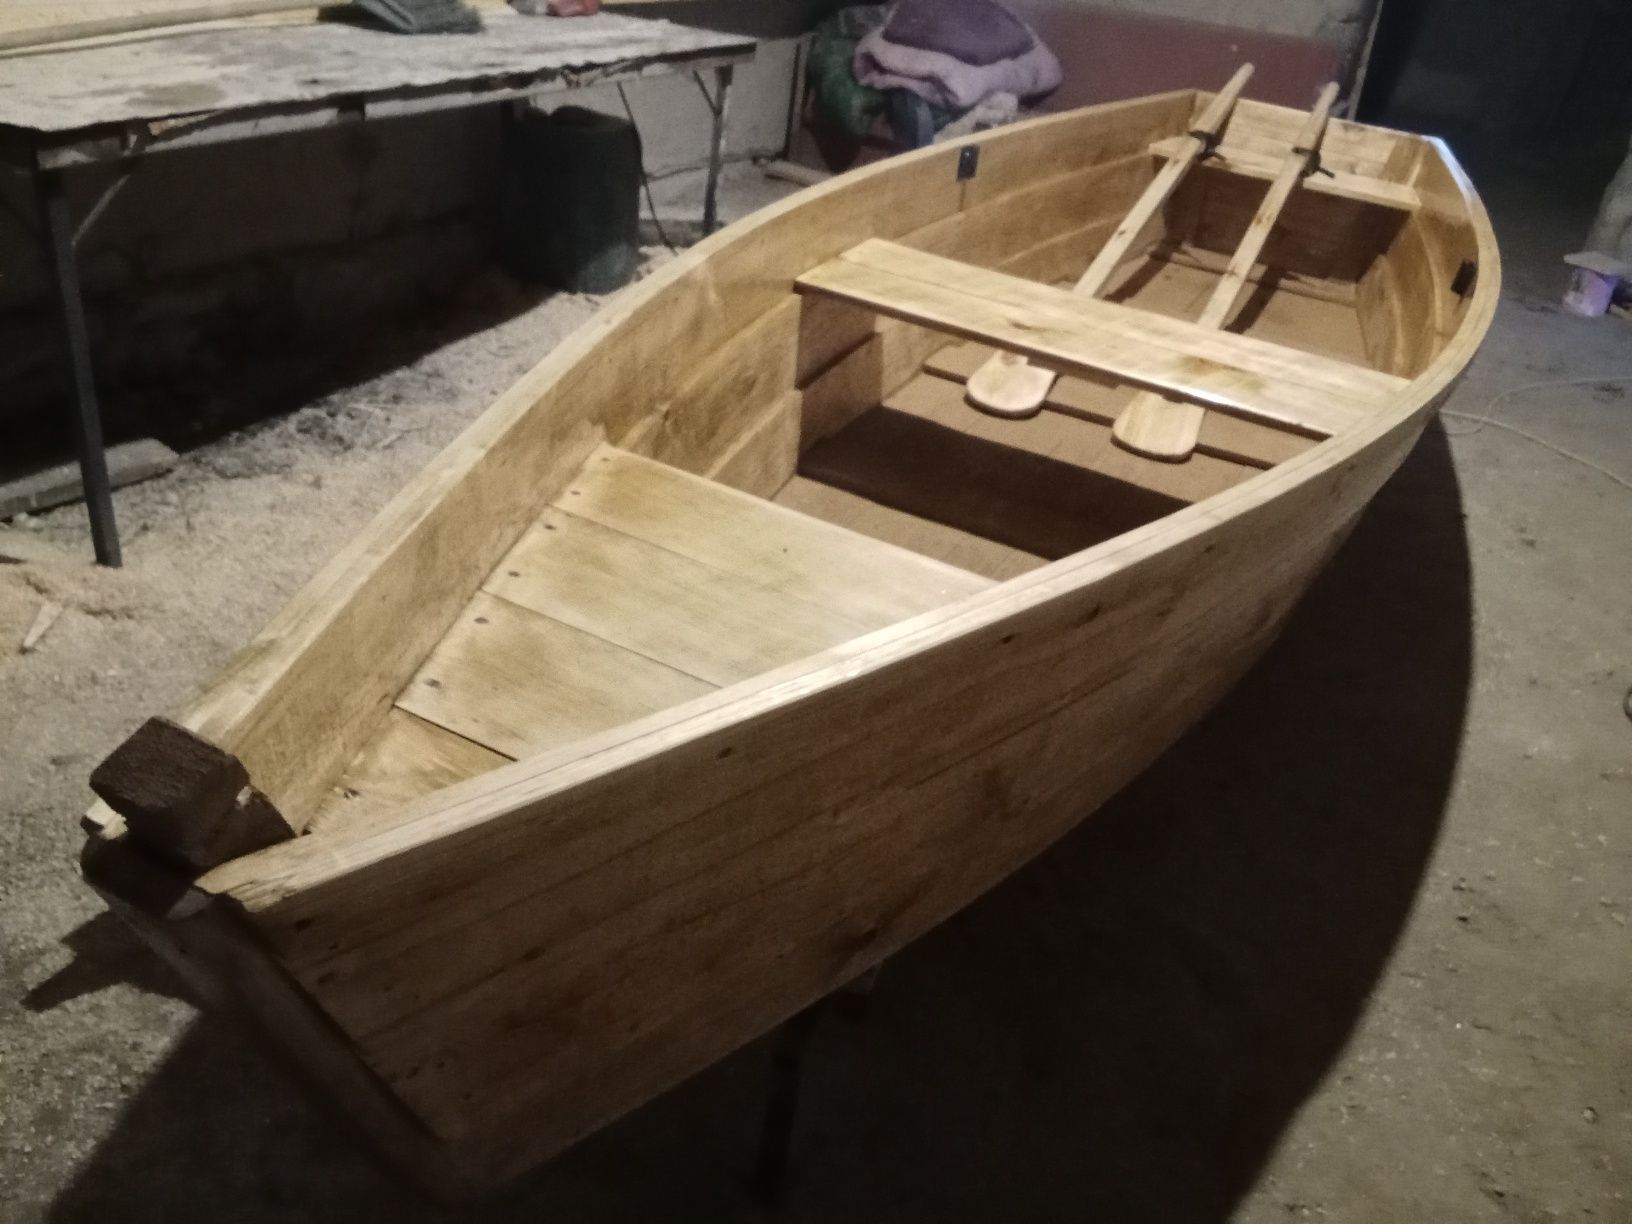 Лодки деревянные